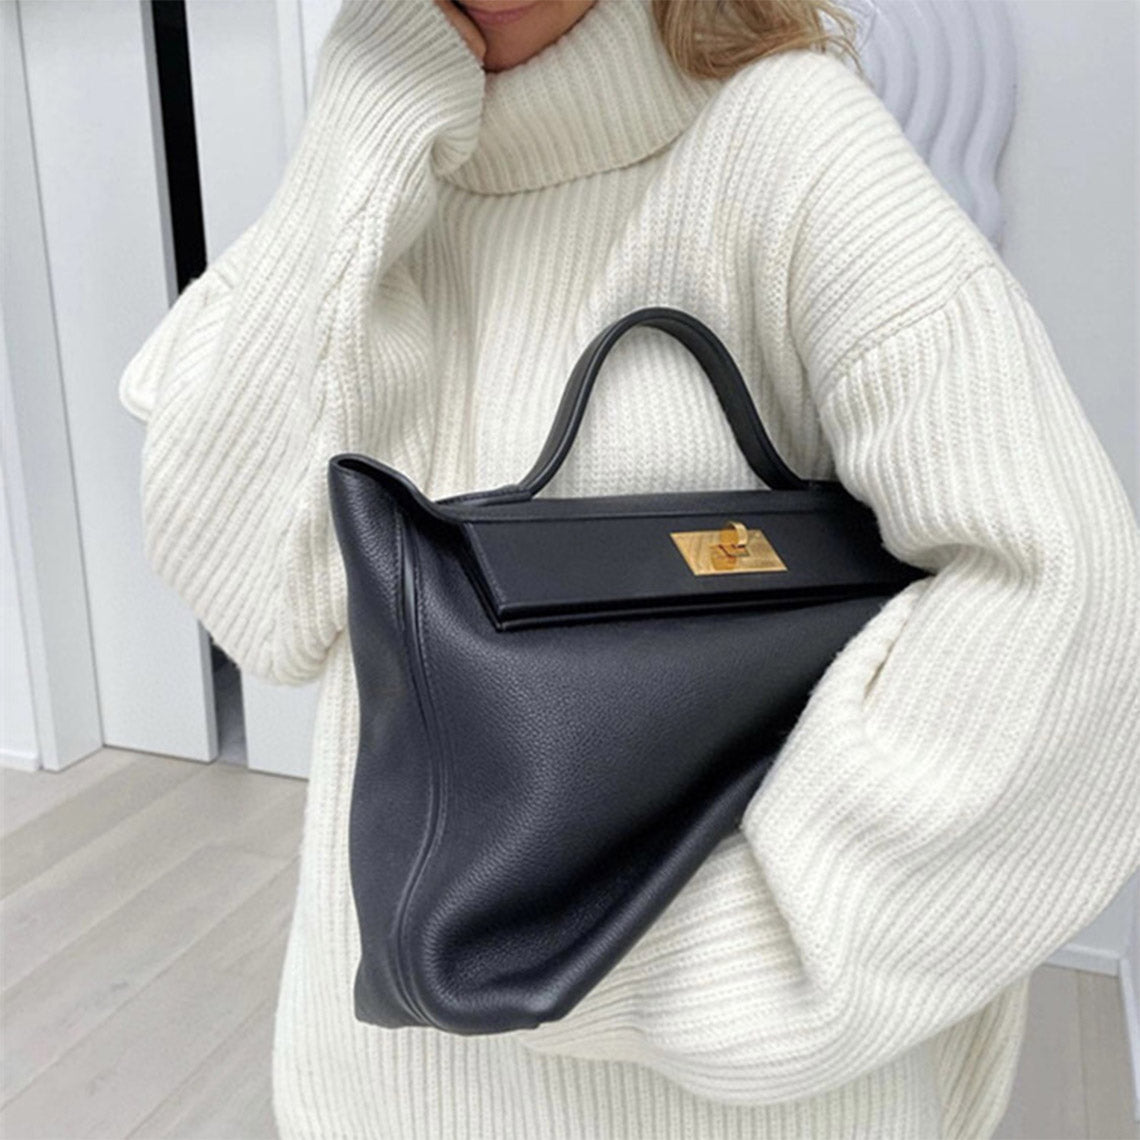 Designer Handbag 2424 | Black Leather Bag for Women - POPSEWING®